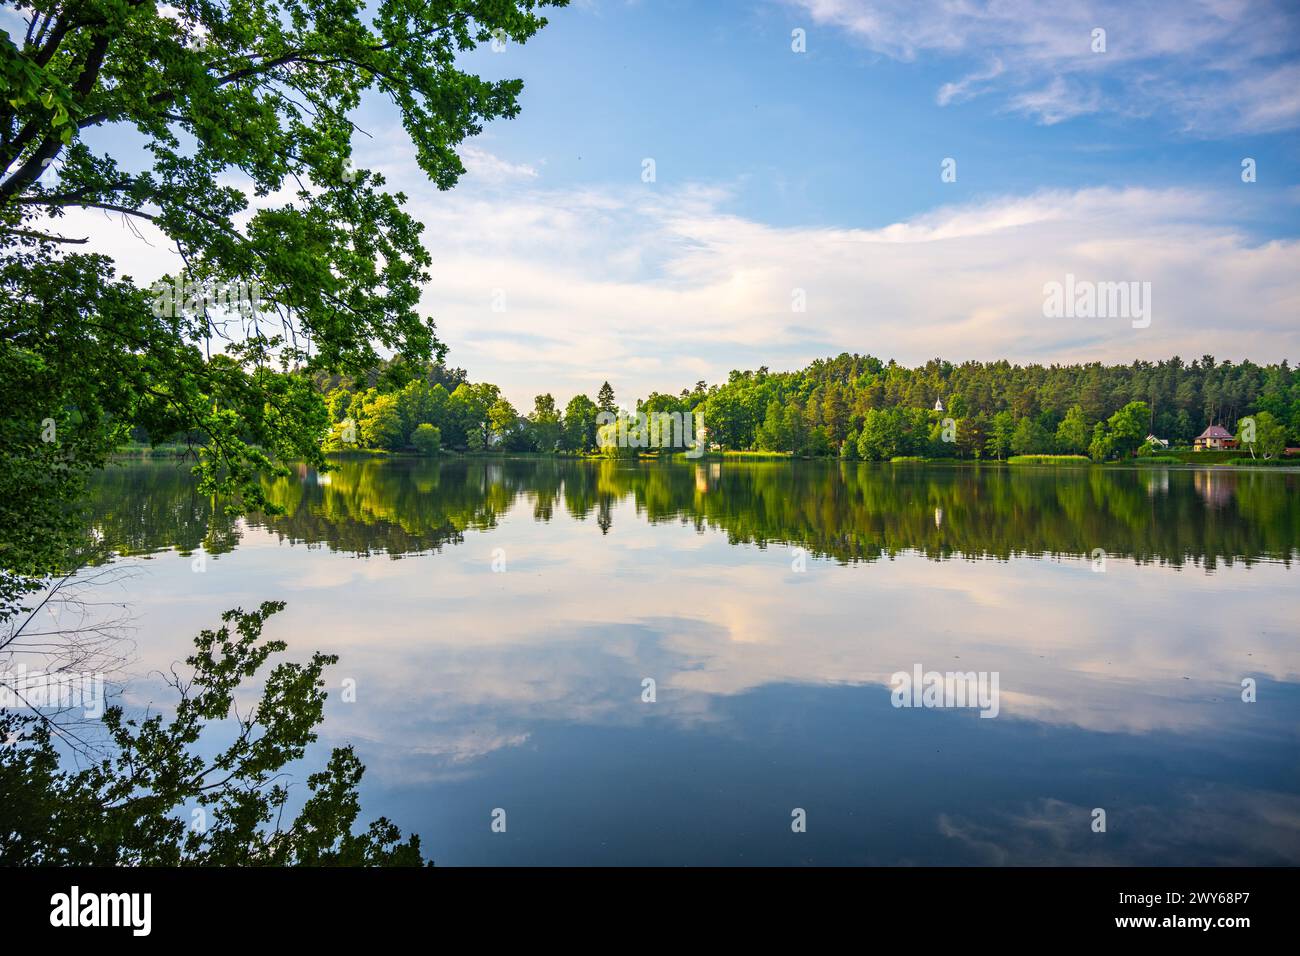 Paysage avec la crête de Jested Mountain reflétée dans l'eau du lac Hamr, ou Hamr Pond. République tchèque Banque D'Images